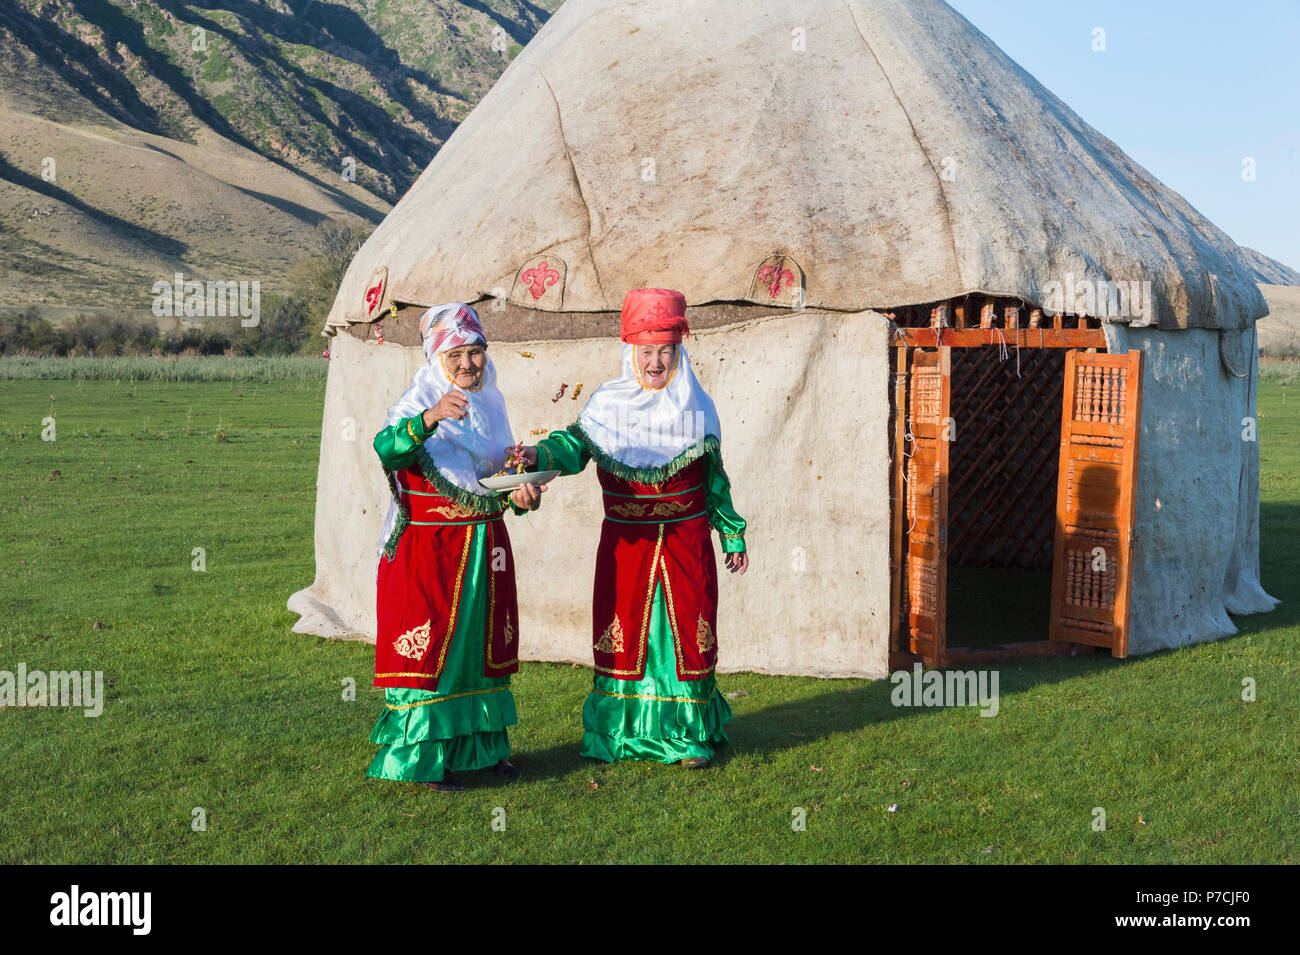 Zwei kasachischen Frauen in traditioneller Kleidung, vor der Jurte, Begrüßung der Gäste, für die redaktionelle nur, Sati Dorf, Tien Shan Gebirge, Kasachstan verwenden Stockfoto